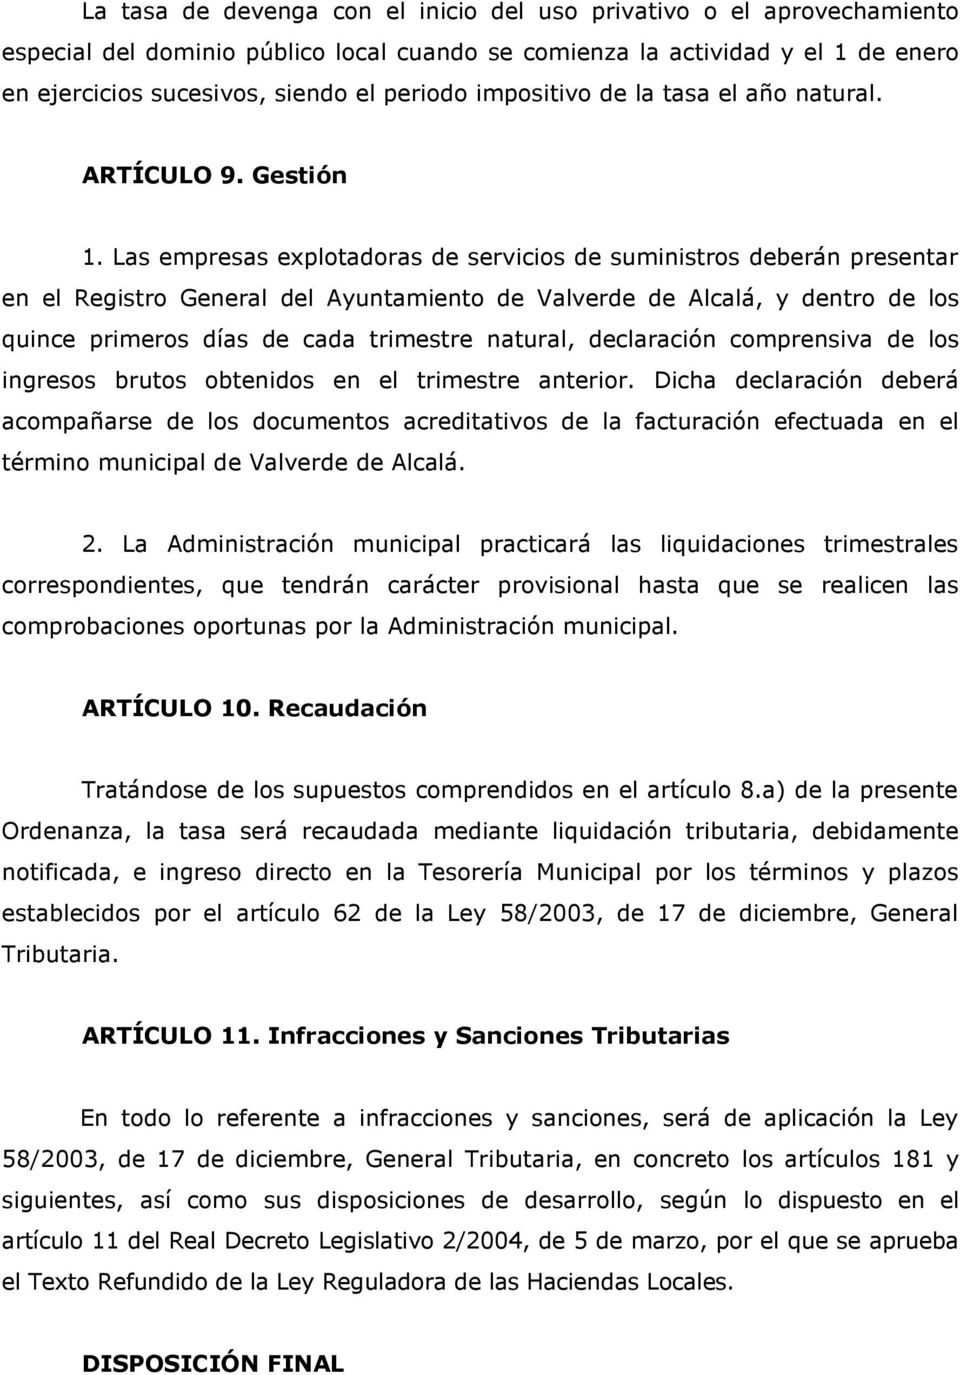 Las empresas explotadoras de servicios de suministros deberán presentar en el Registro General del Ayuntamiento de Valverde de Alcalá, y dentro de los quince primeros días de cada trimestre natural,